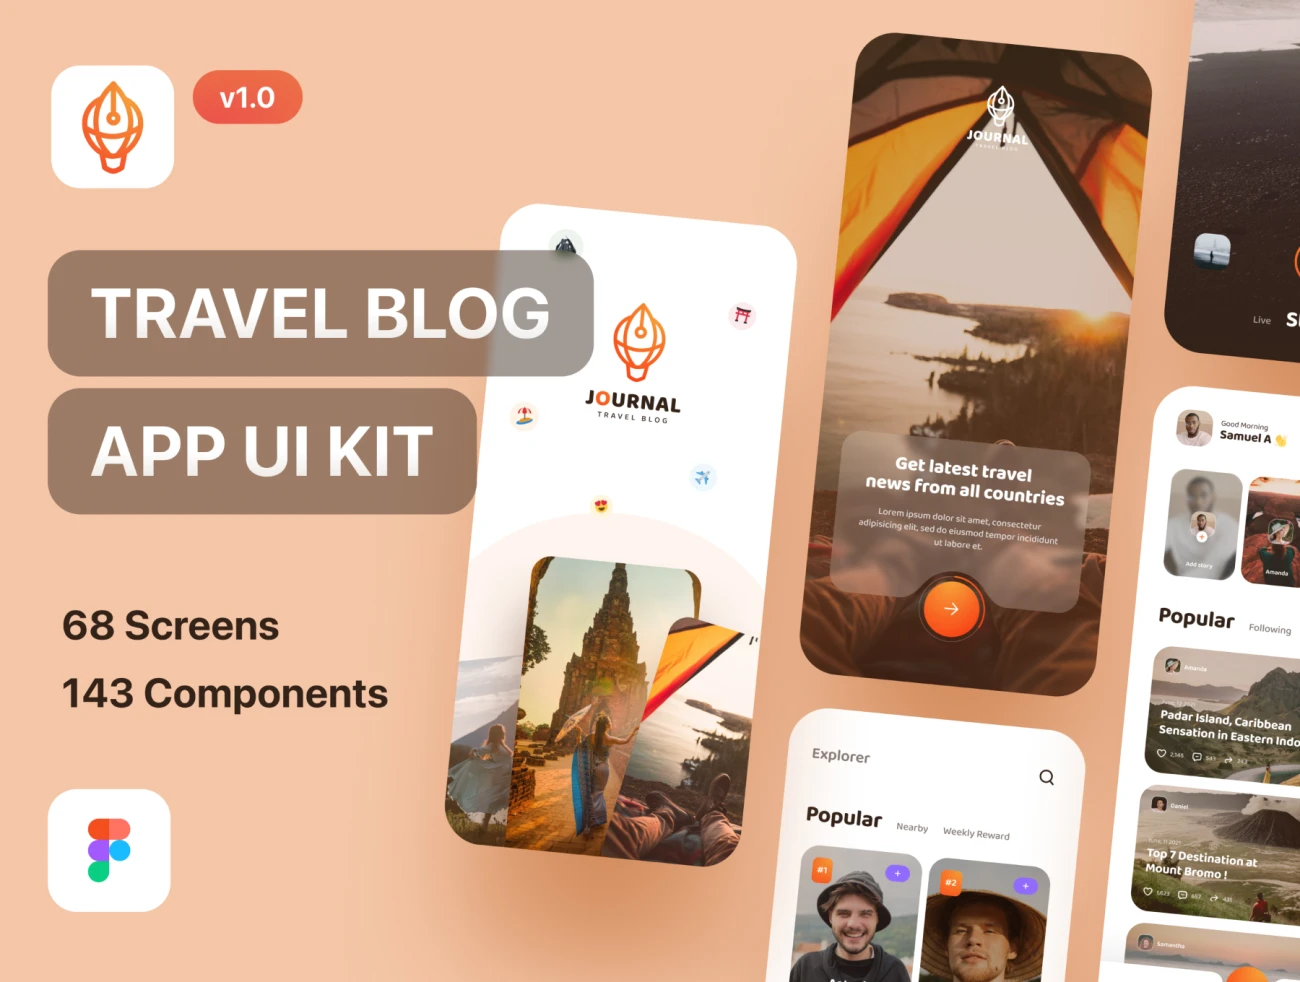 68屏旅游博客应用 UI 套件 Journal - Travel Blog App UI Kit Light Mode-UI/UX、ui套件、主页、介绍、付款、出行、列表、博客、卡片式、地图、应用、引导页、播放器、日历、注册、预订-到位啦UI